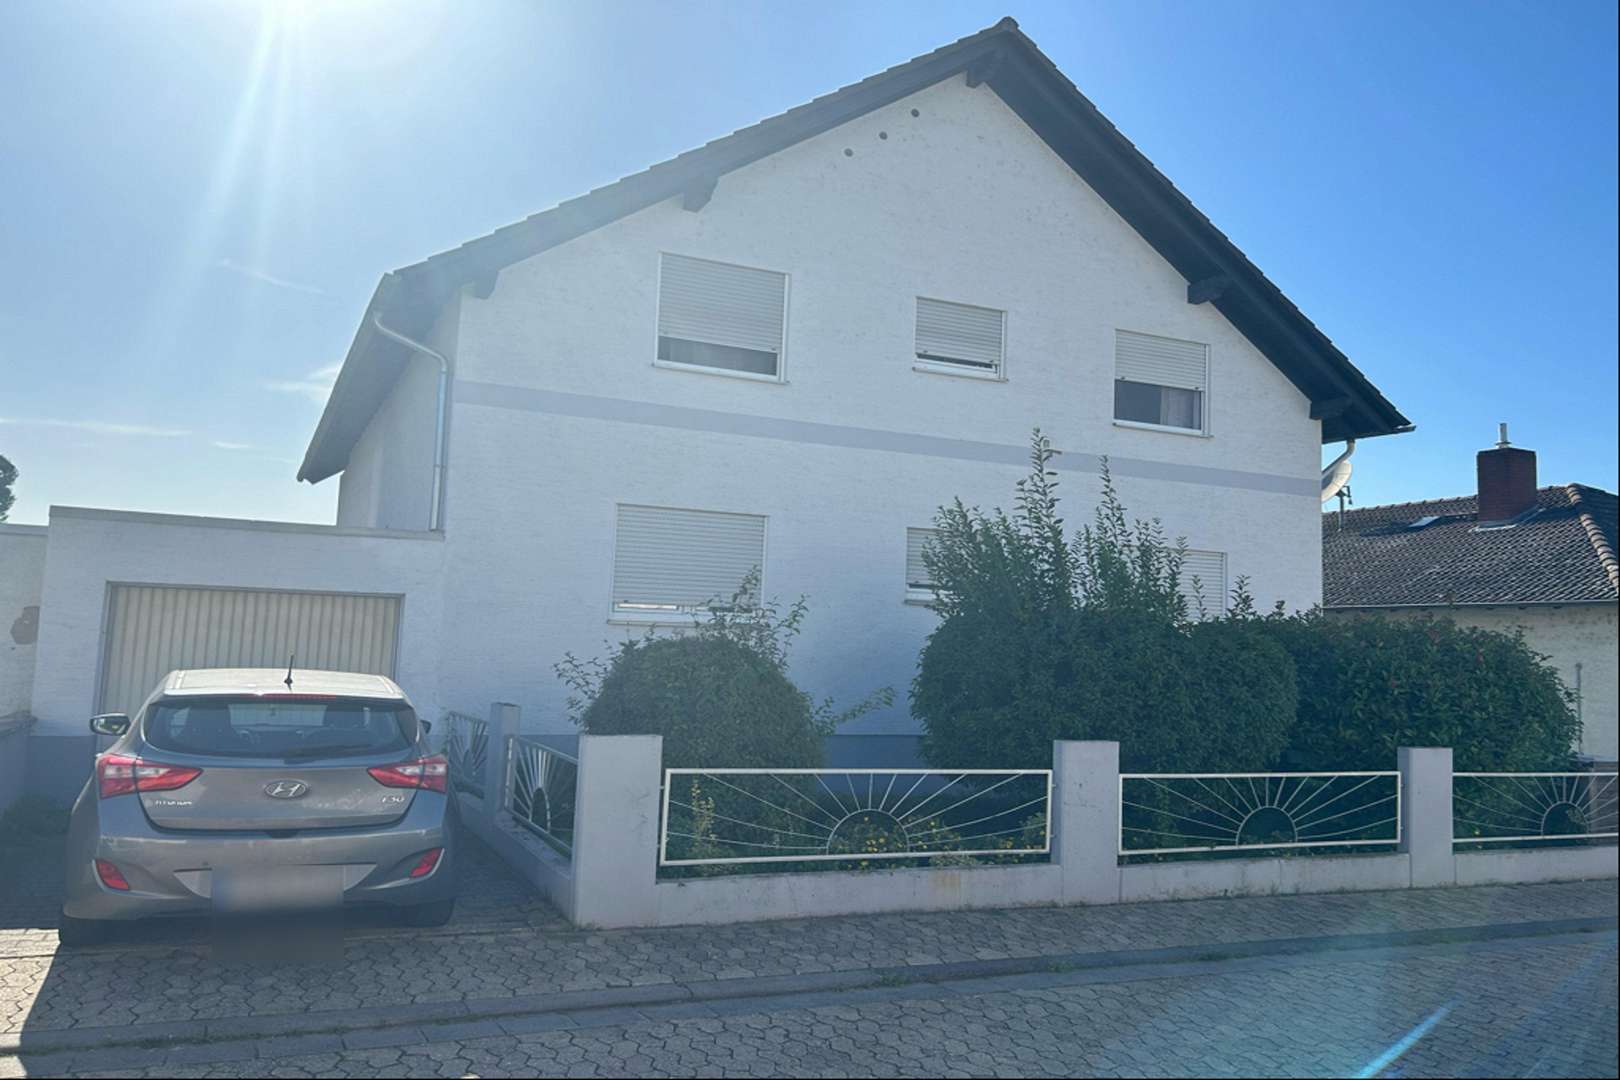 Titel - Dachgeschosswohnung in 55545 Bad Kreuznach mit 115m² kaufen